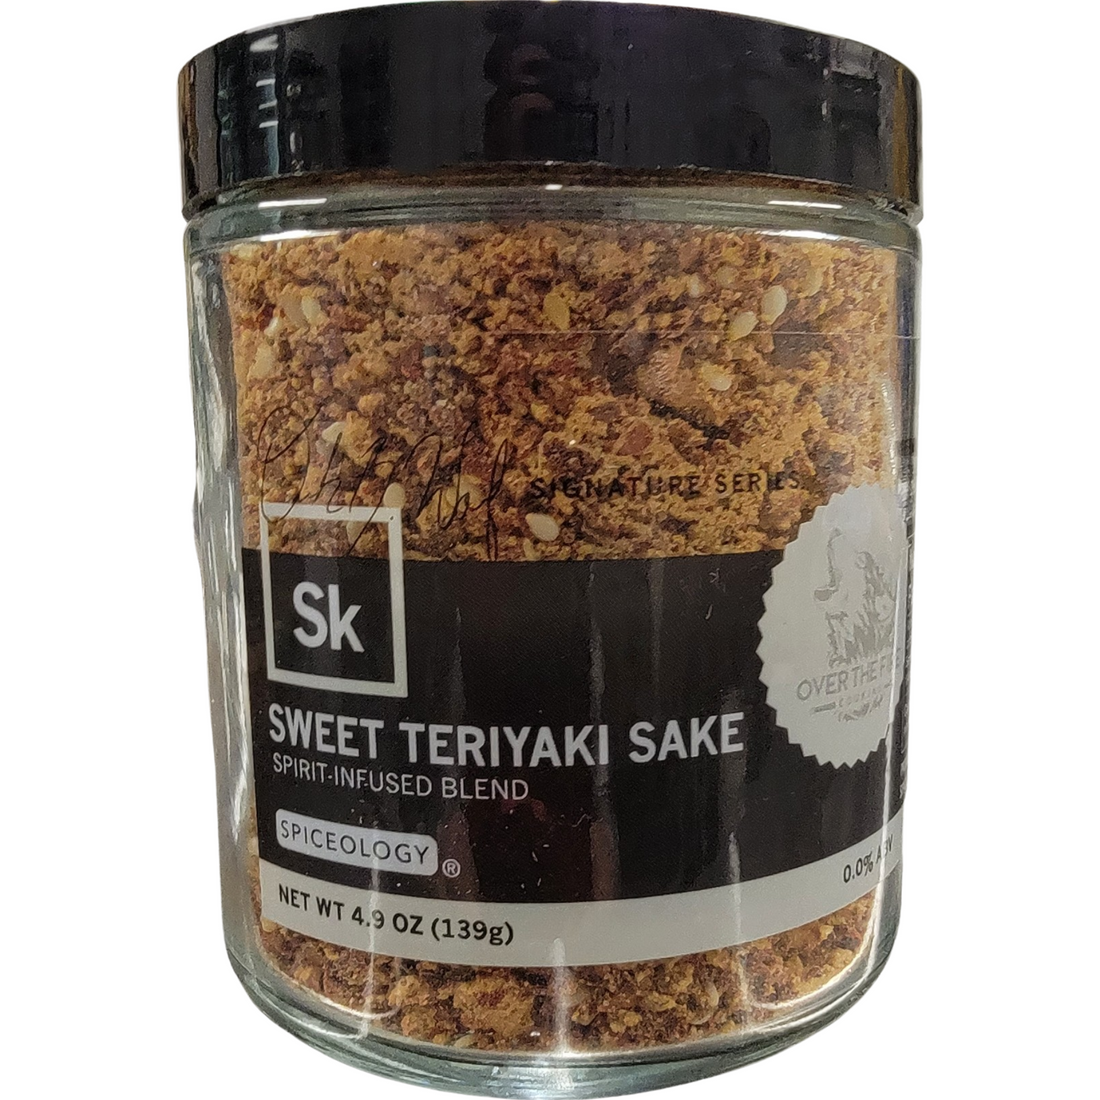 Sweet Teriyaki Sake Infused Spice Blend